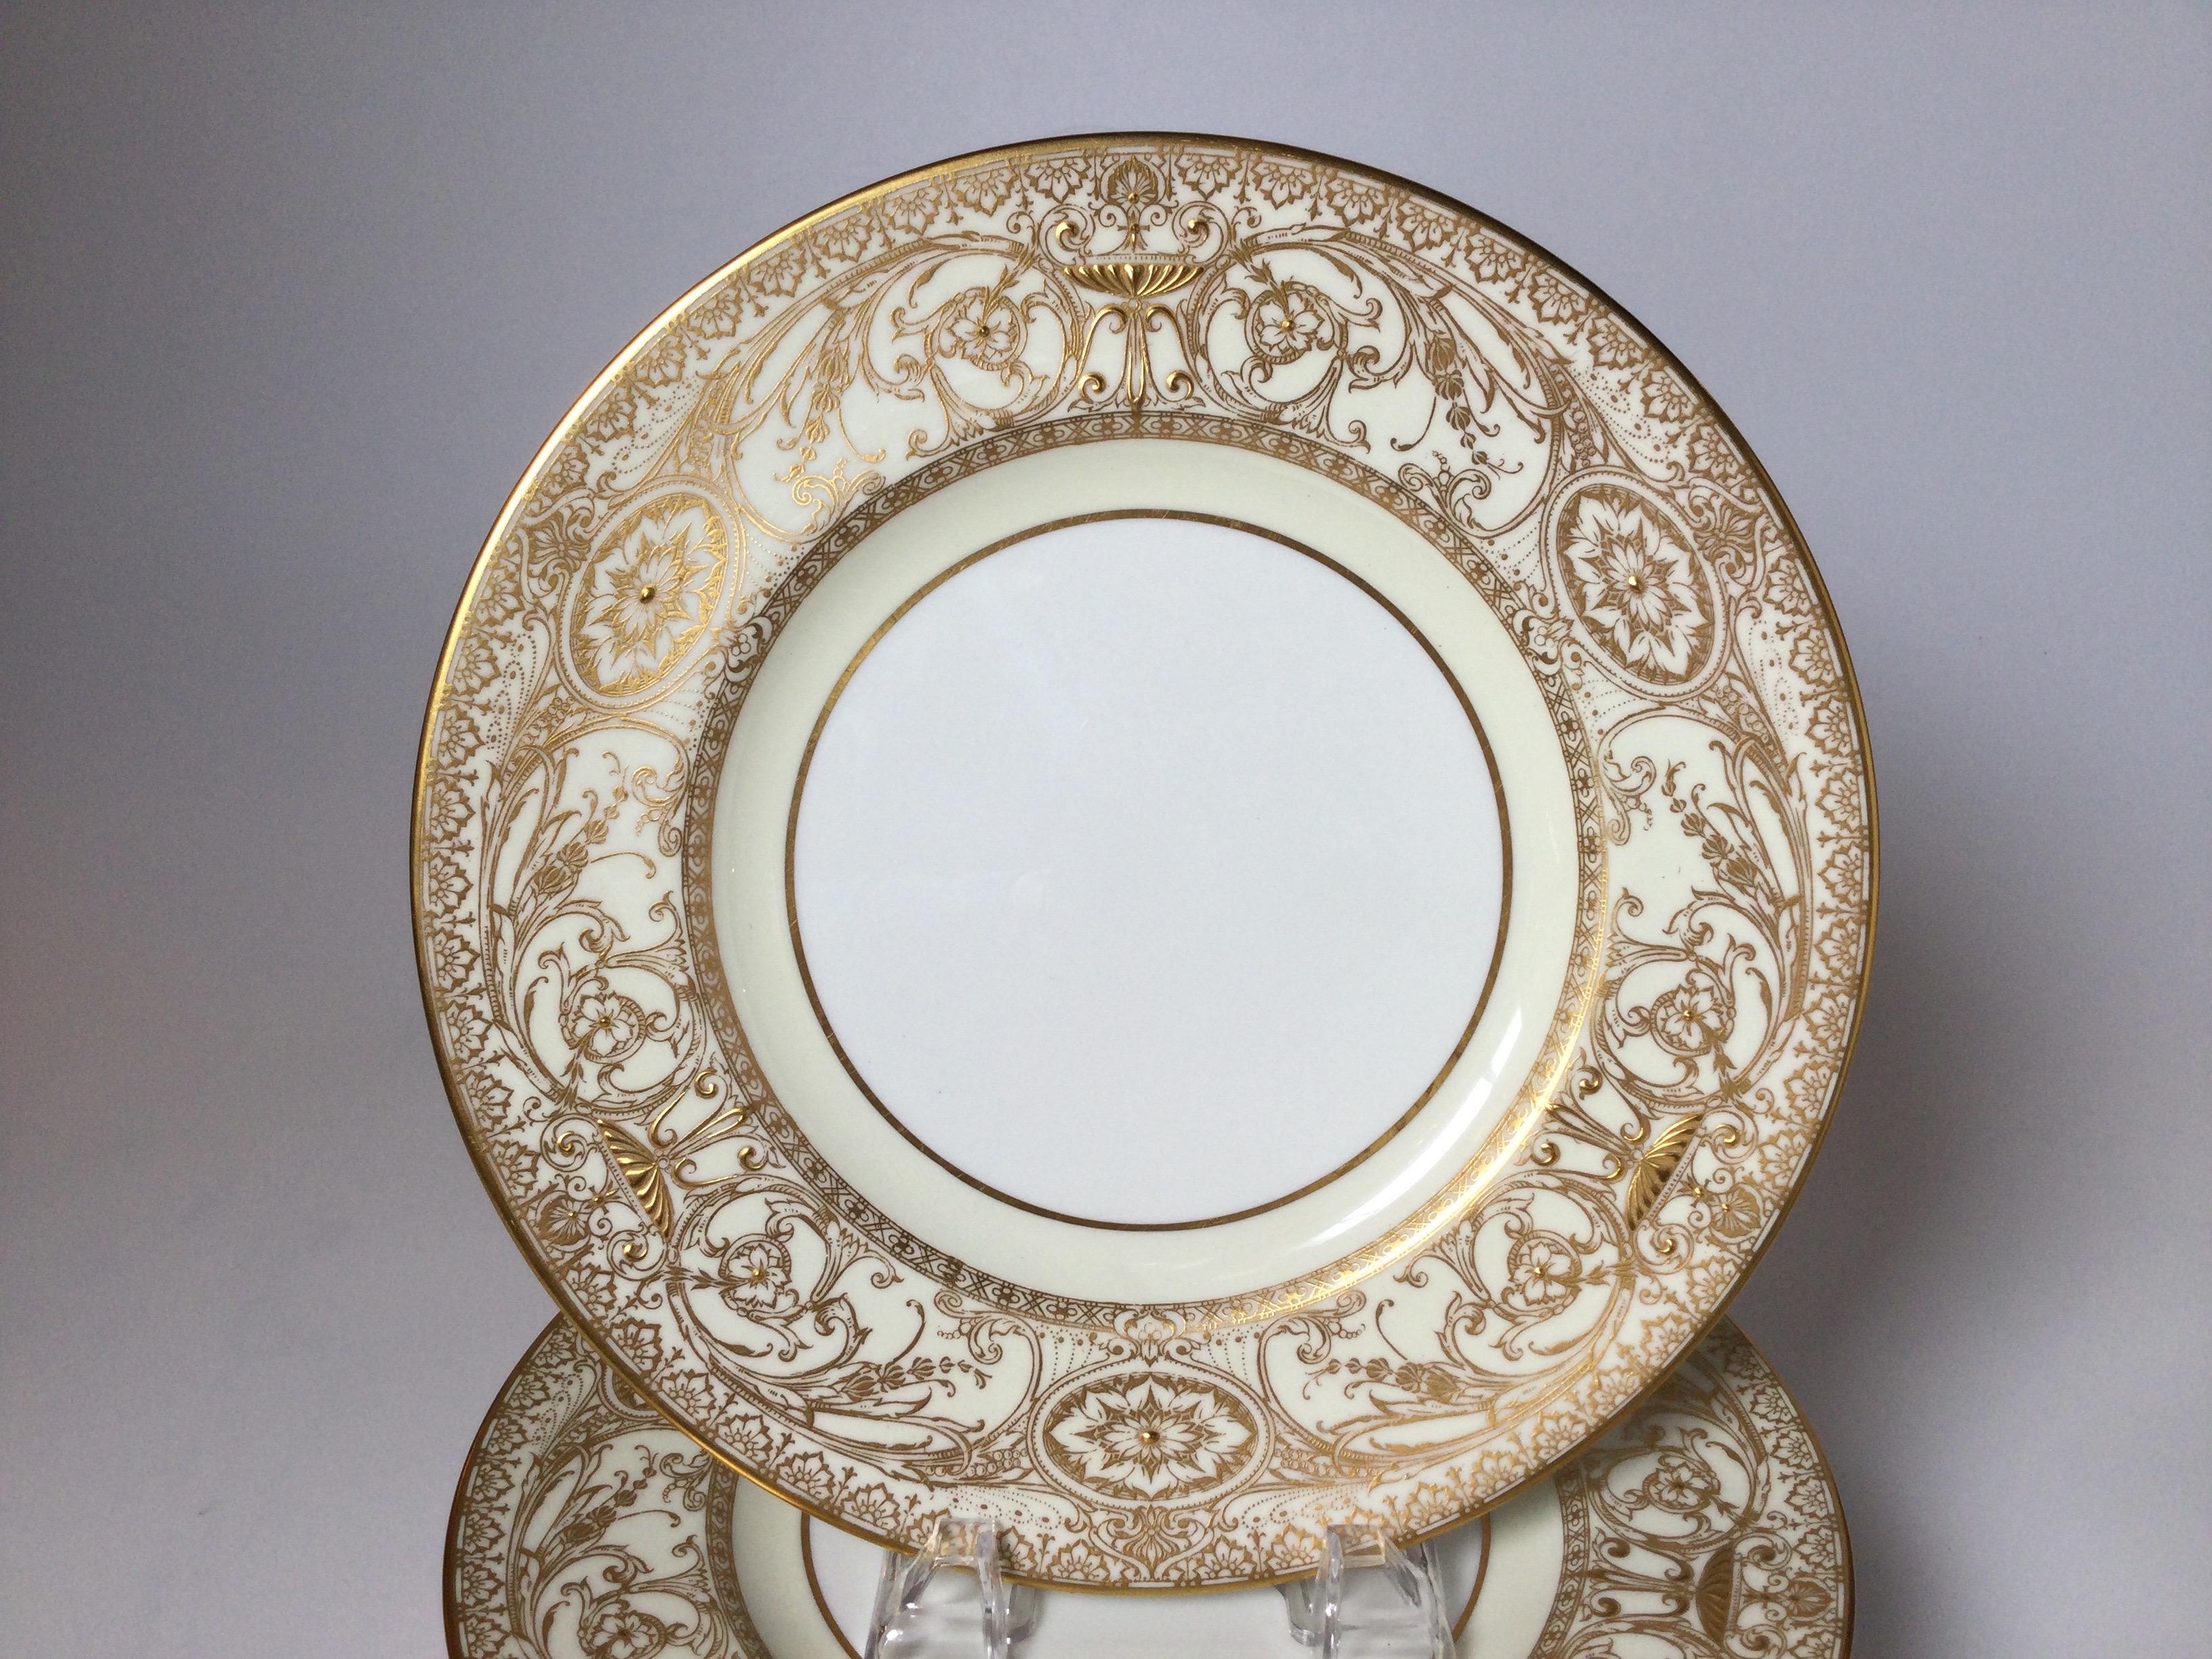 Un ensemble royal de 12 assiettes de service à la dorure élaborée, par Royal Worcester. L'ensemble est orné de larges et délicates bordures dorées sur fond de porcelaine blanche. La marque au dos date de 1950.